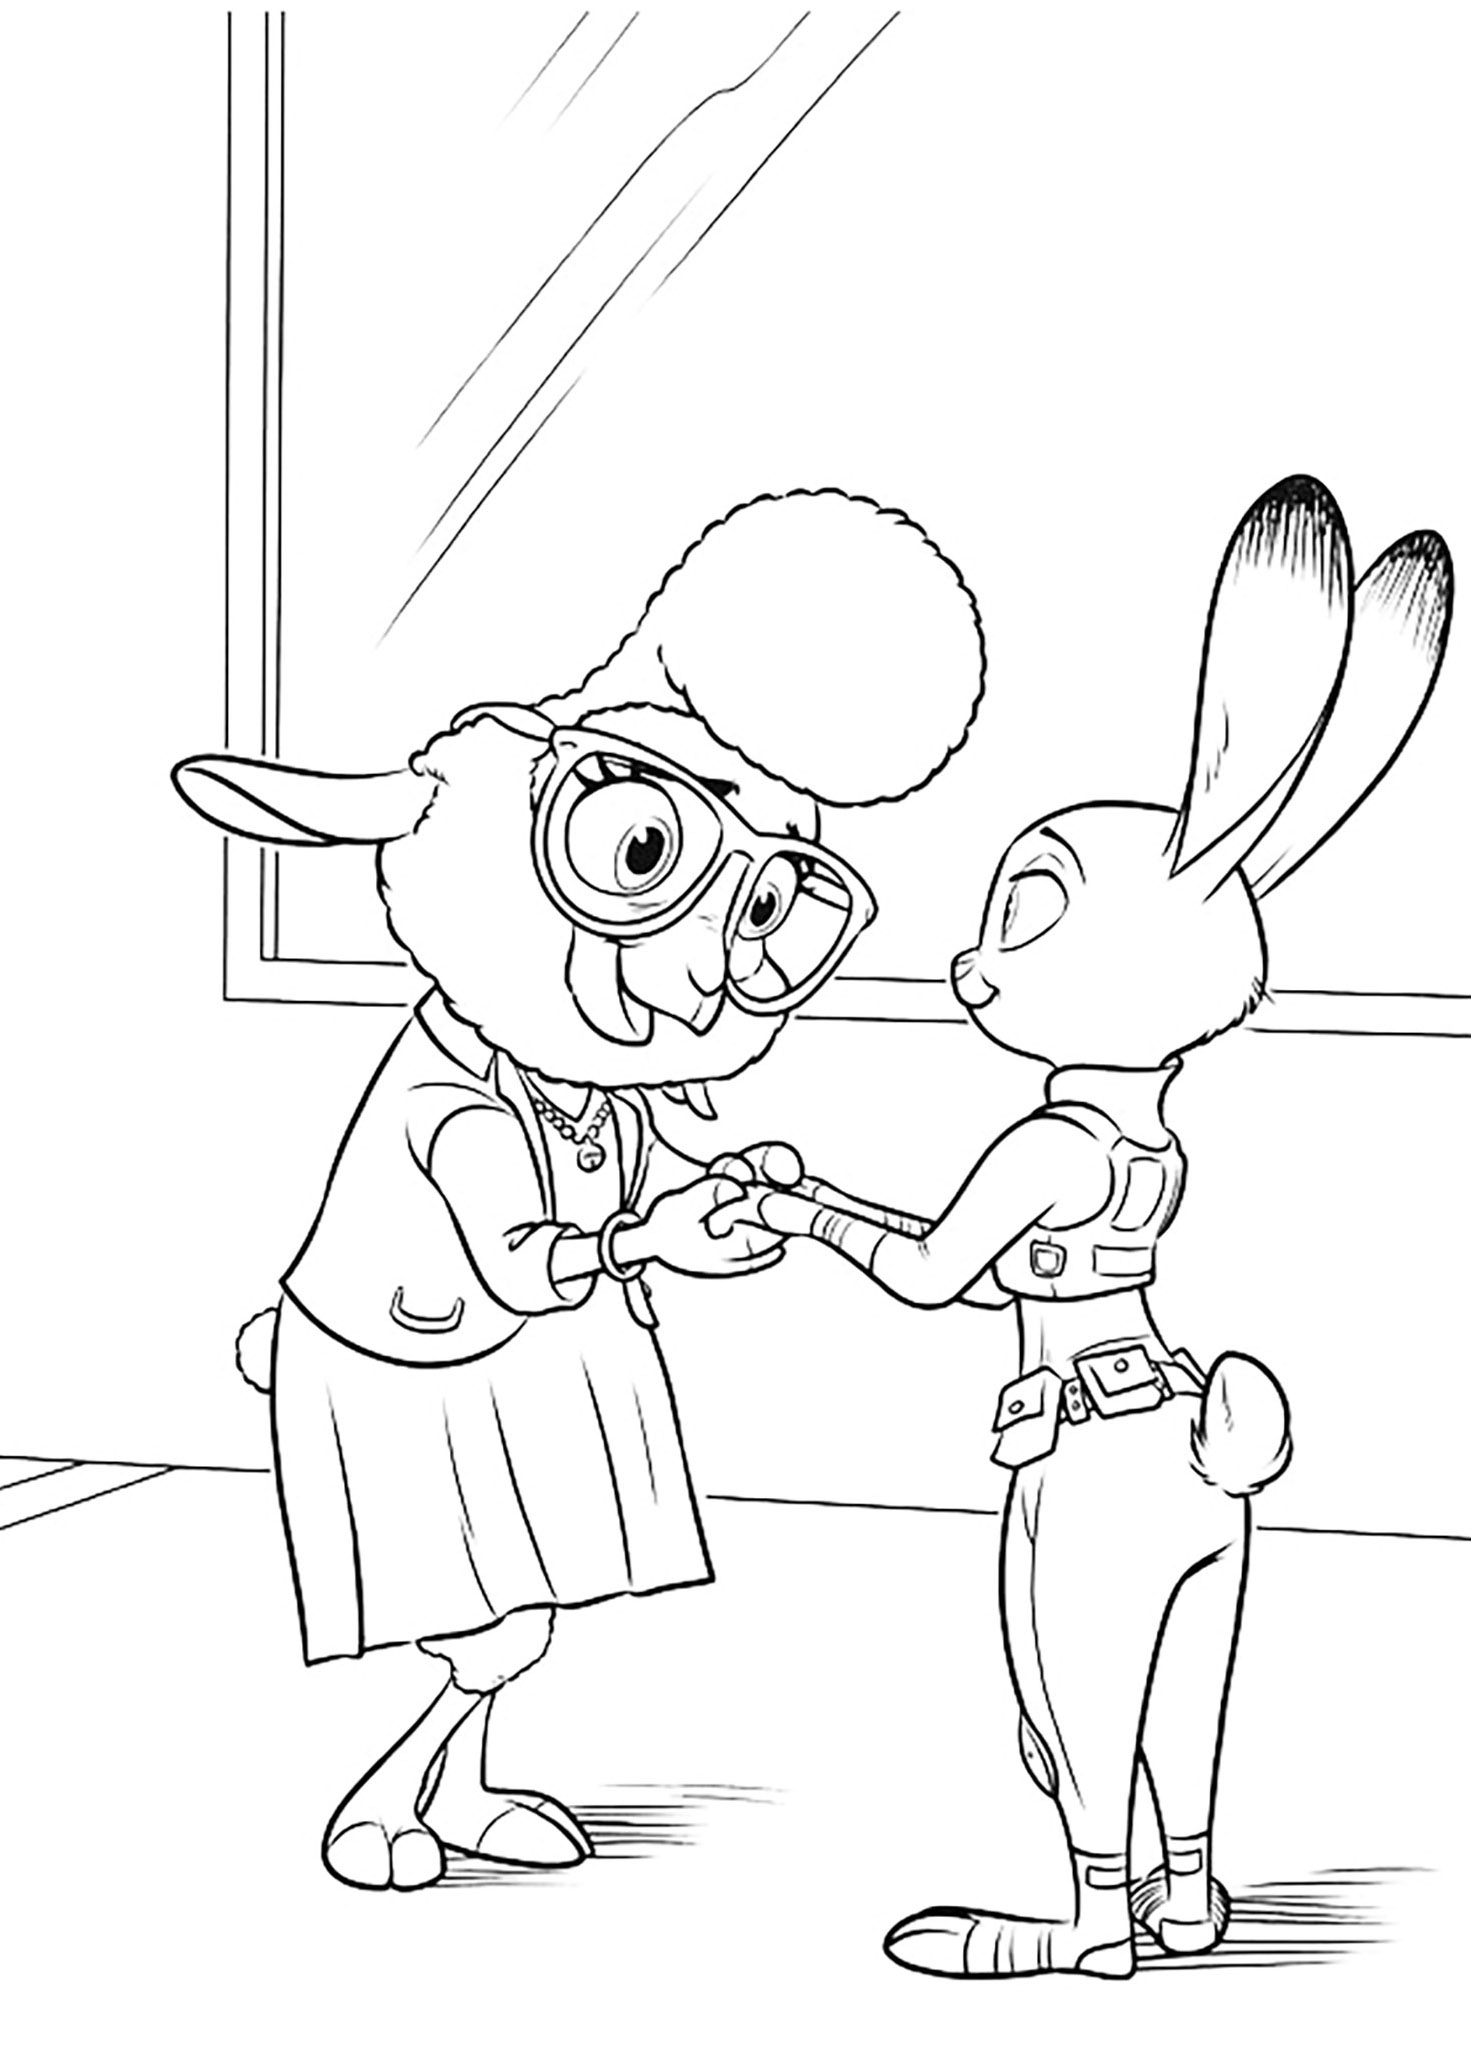 Attention Judy ... Elle n'est pas celle que tu crois ...